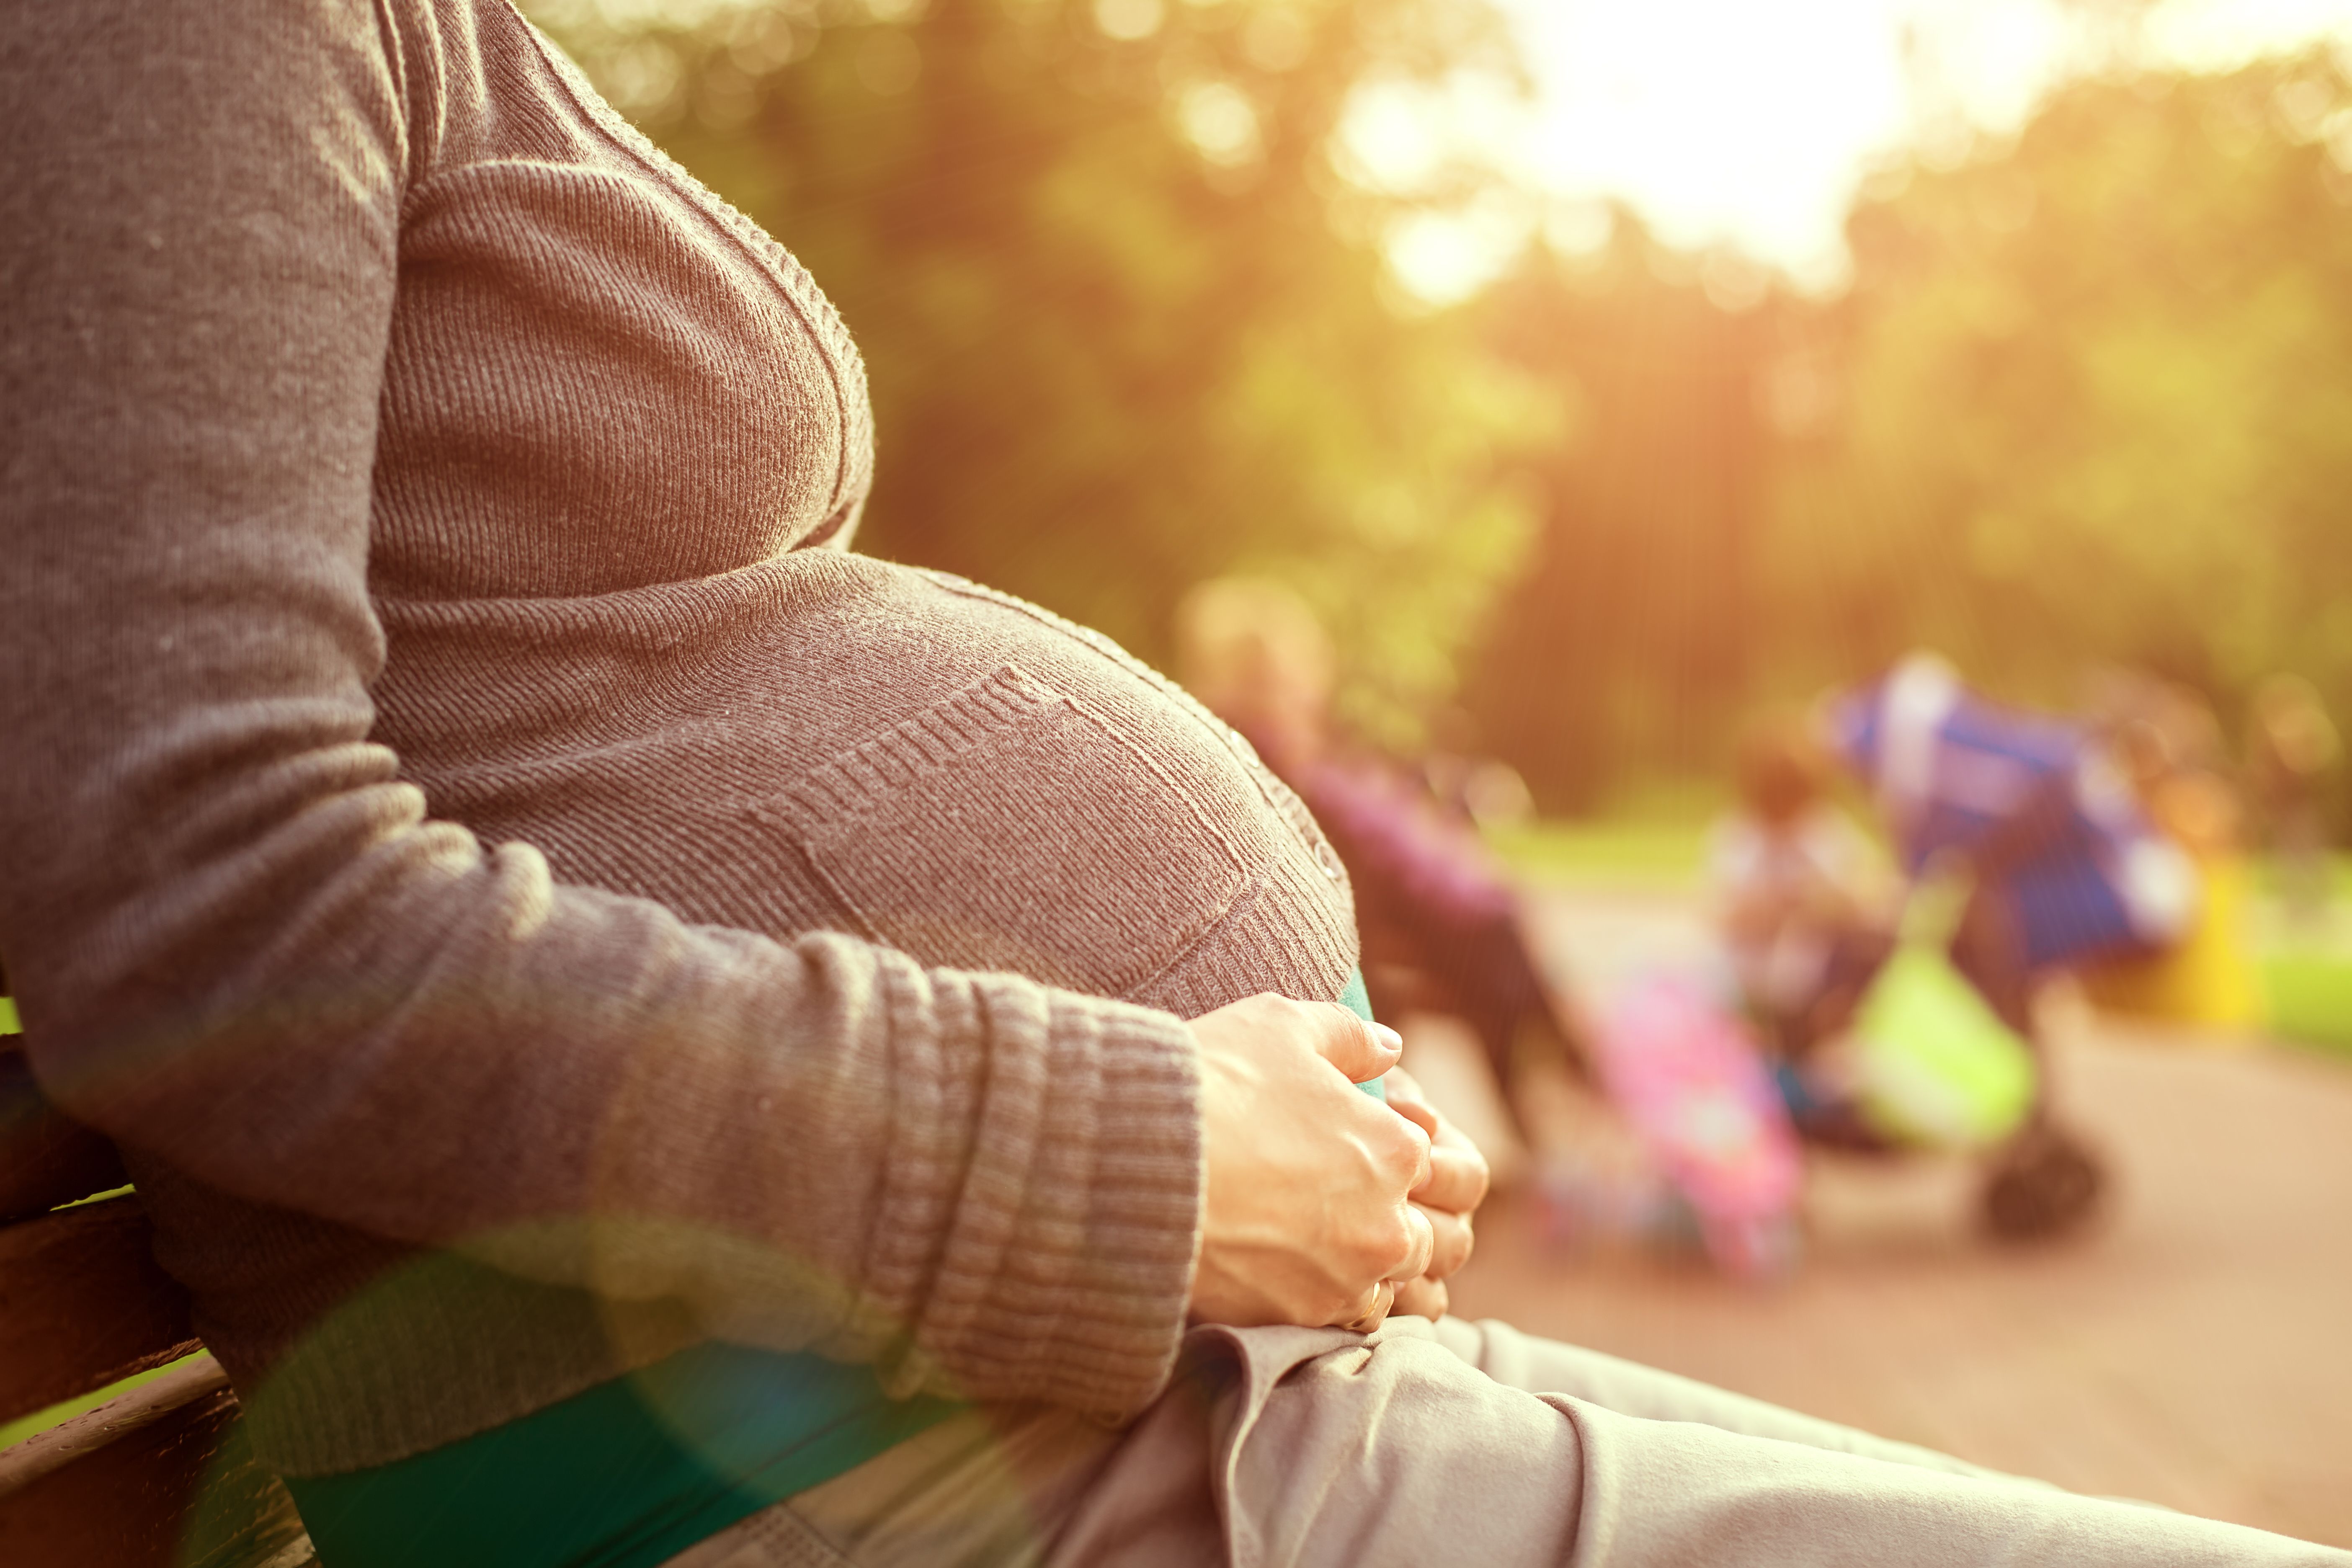 Une femme enceinte tient son ventre qui grossit. | Source : Shutterstock